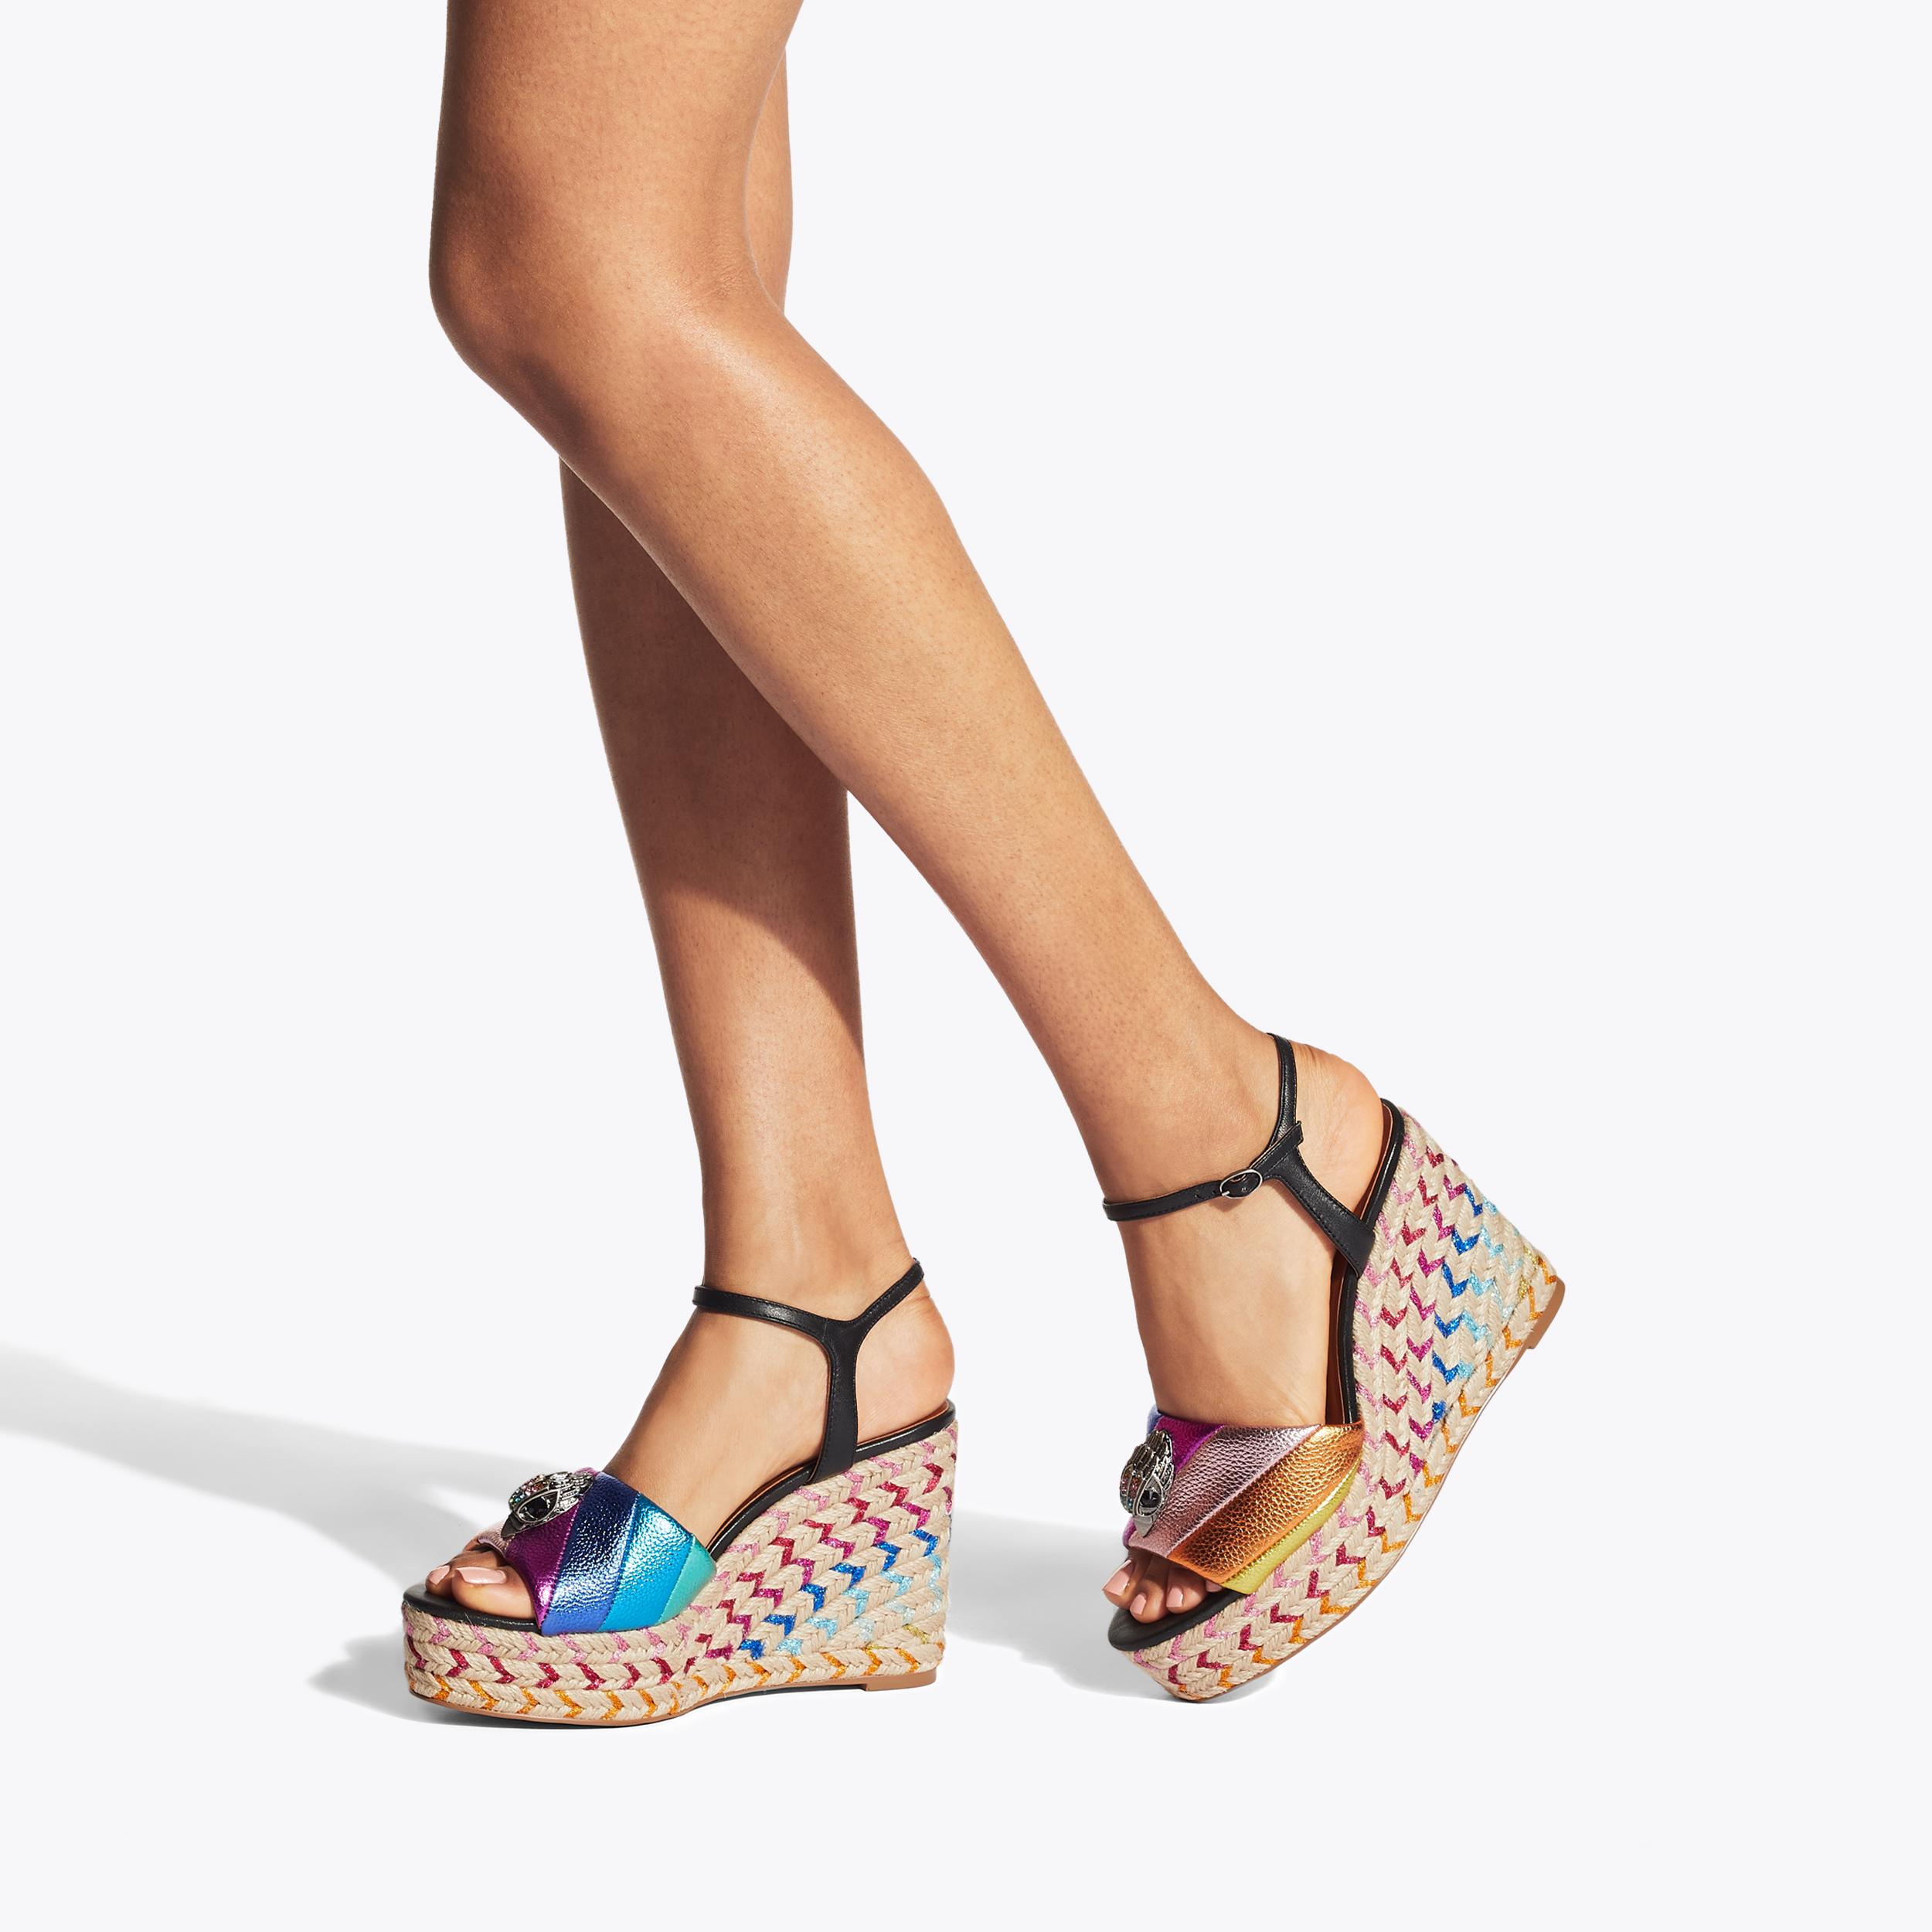 New Look floral print platform wedge peep toes > Shoeperwoman